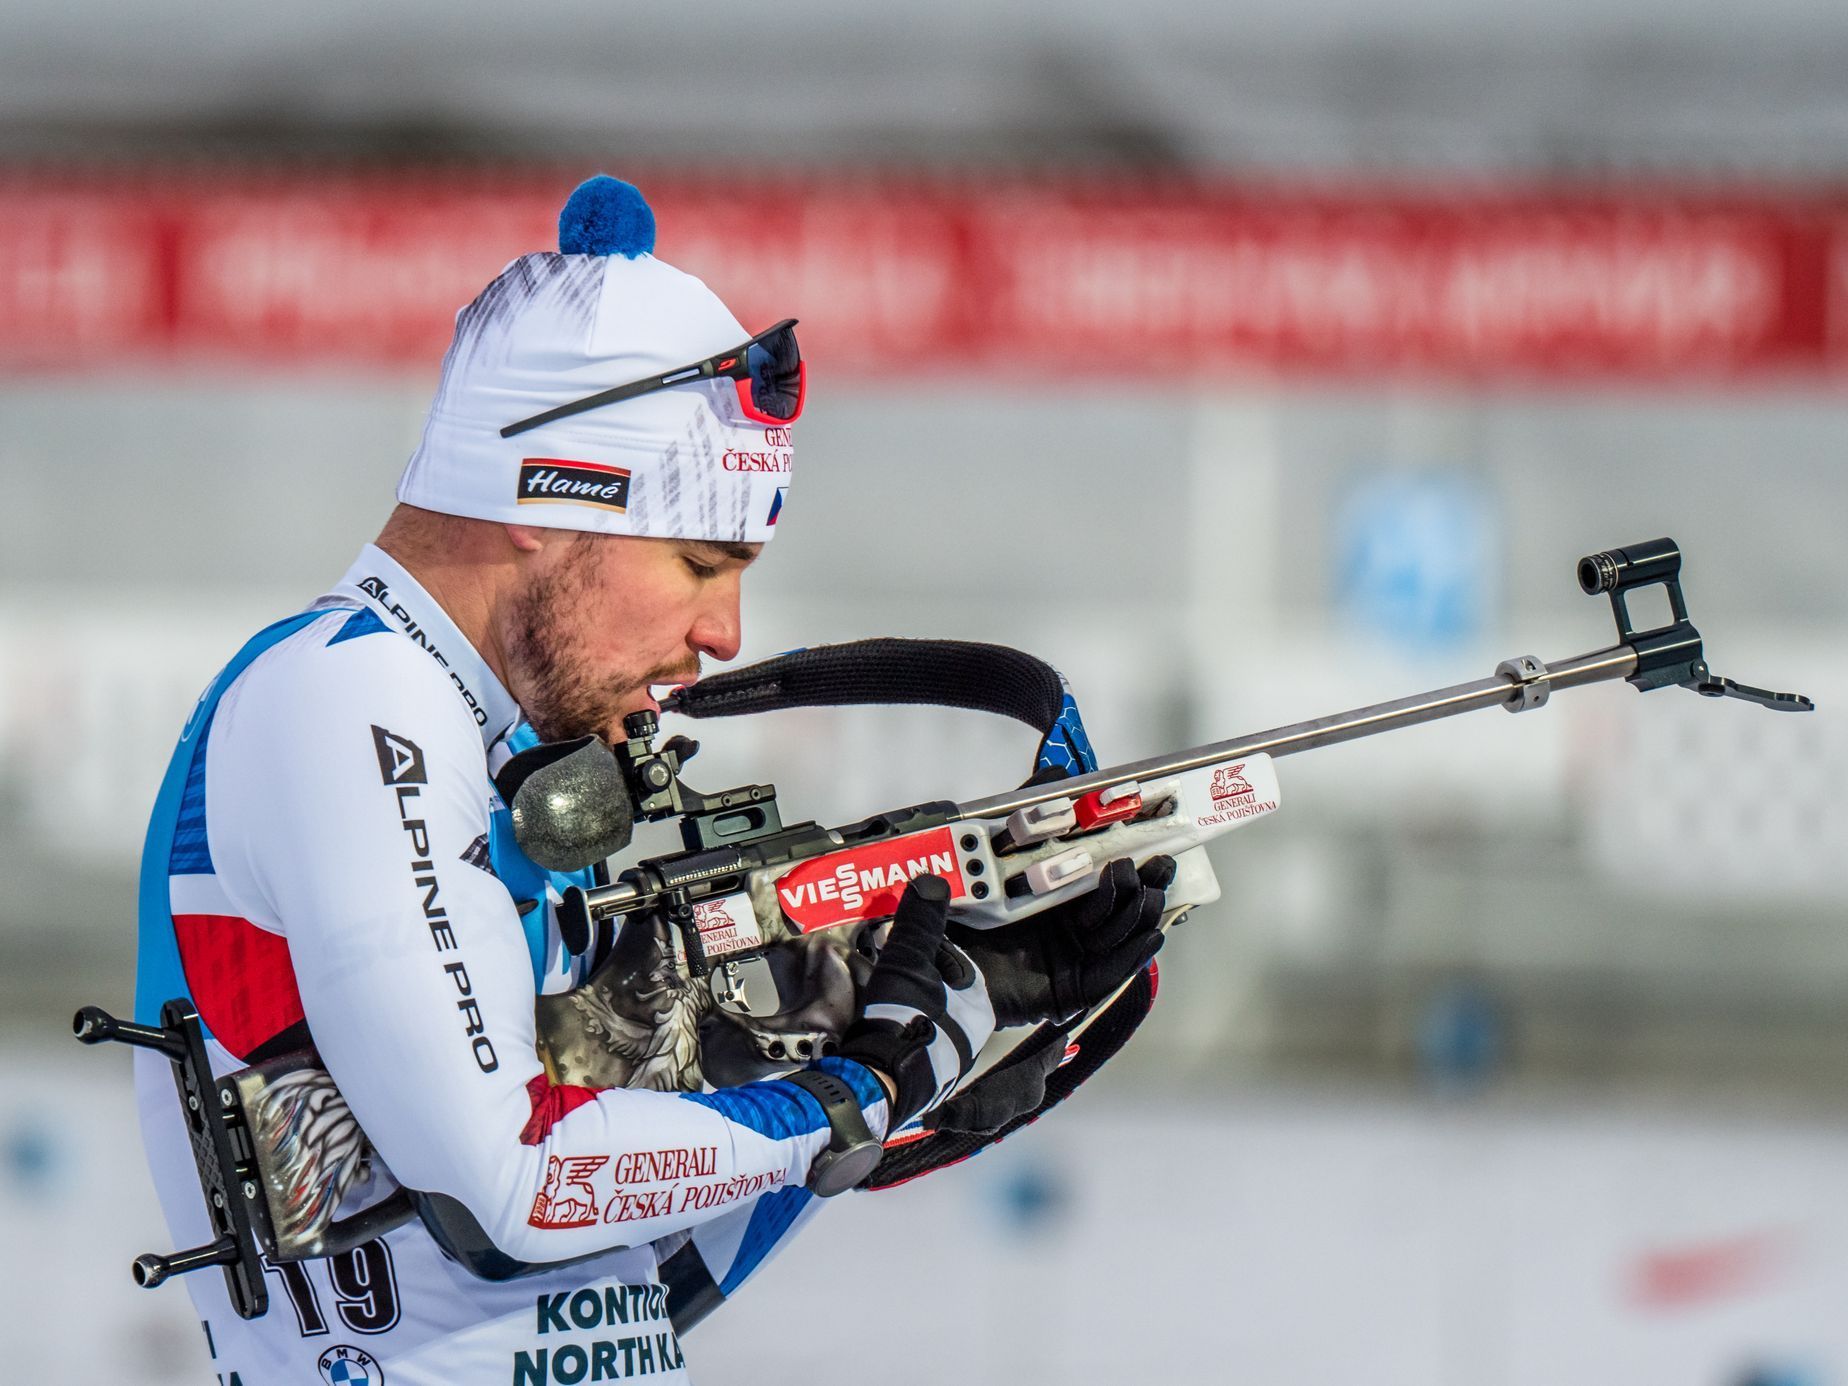 SP v biatlonu 2020/21 v Kontiolahti, vytrvalostní závod mužů: Michal Krčmář